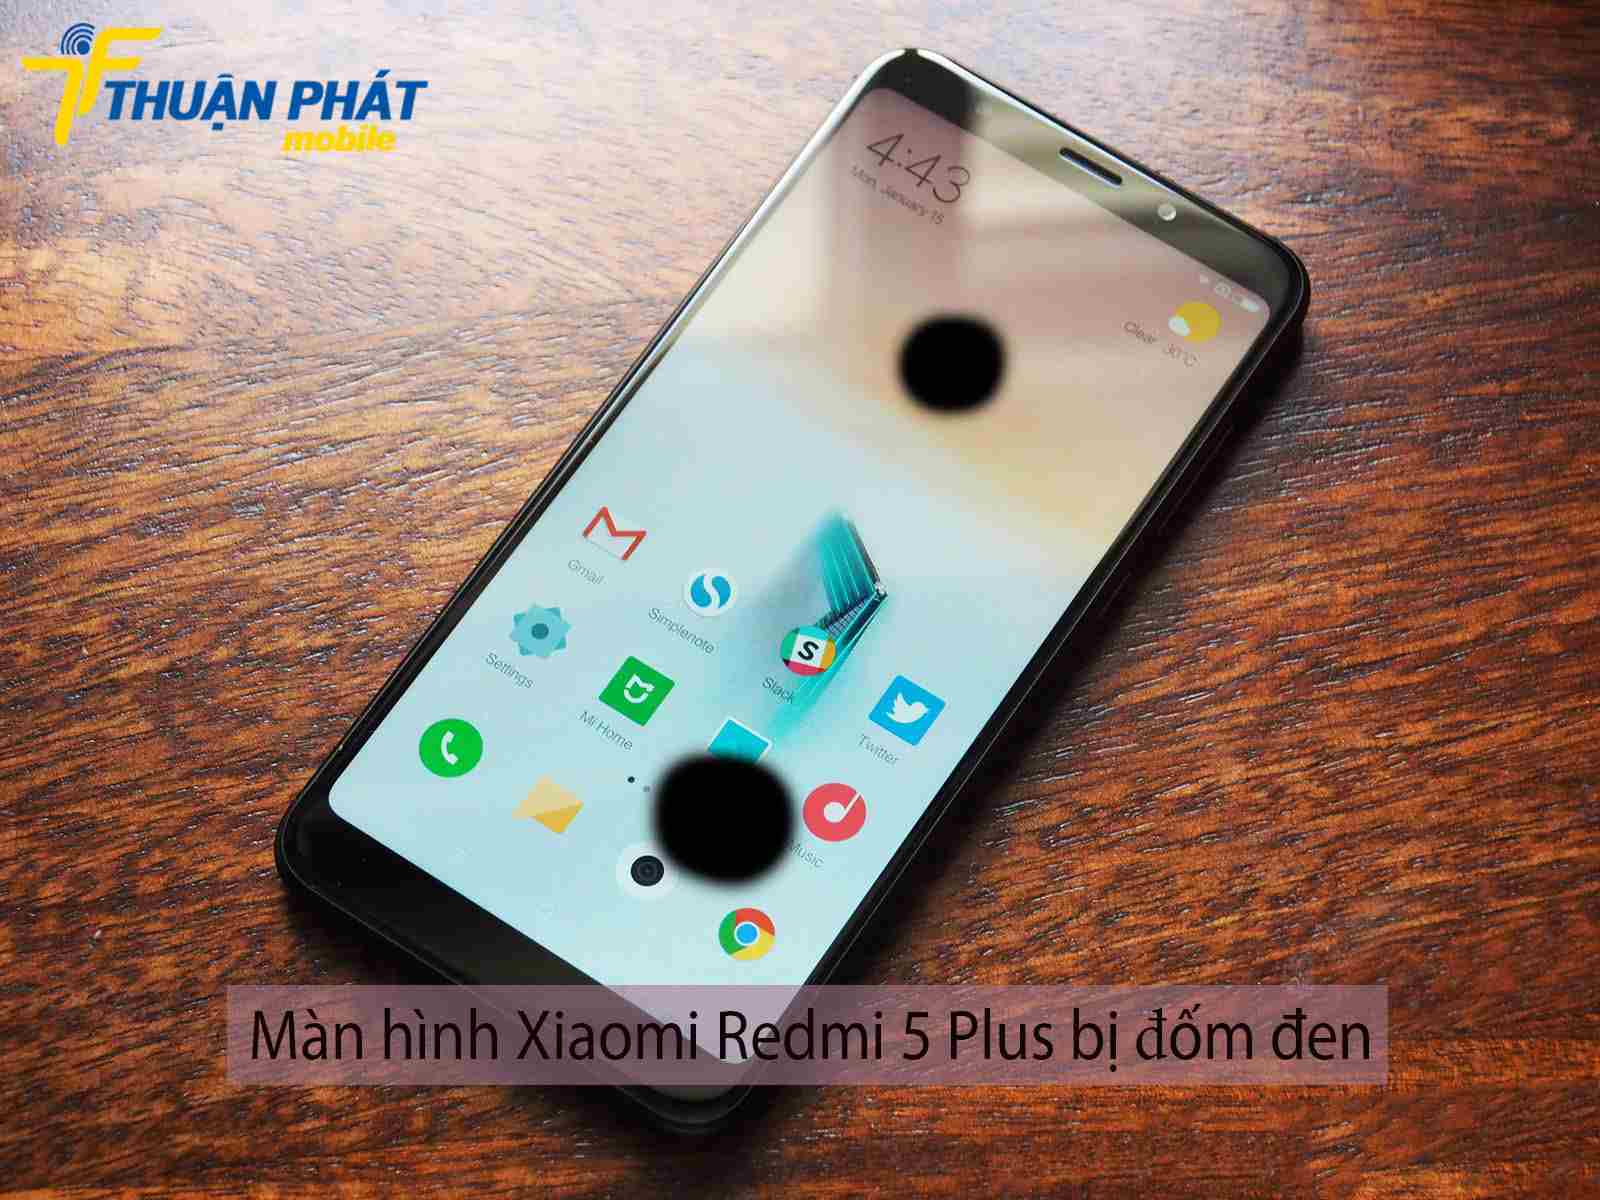 Màn hình Xiaomi Redmi 5 Plus bị đốm đen